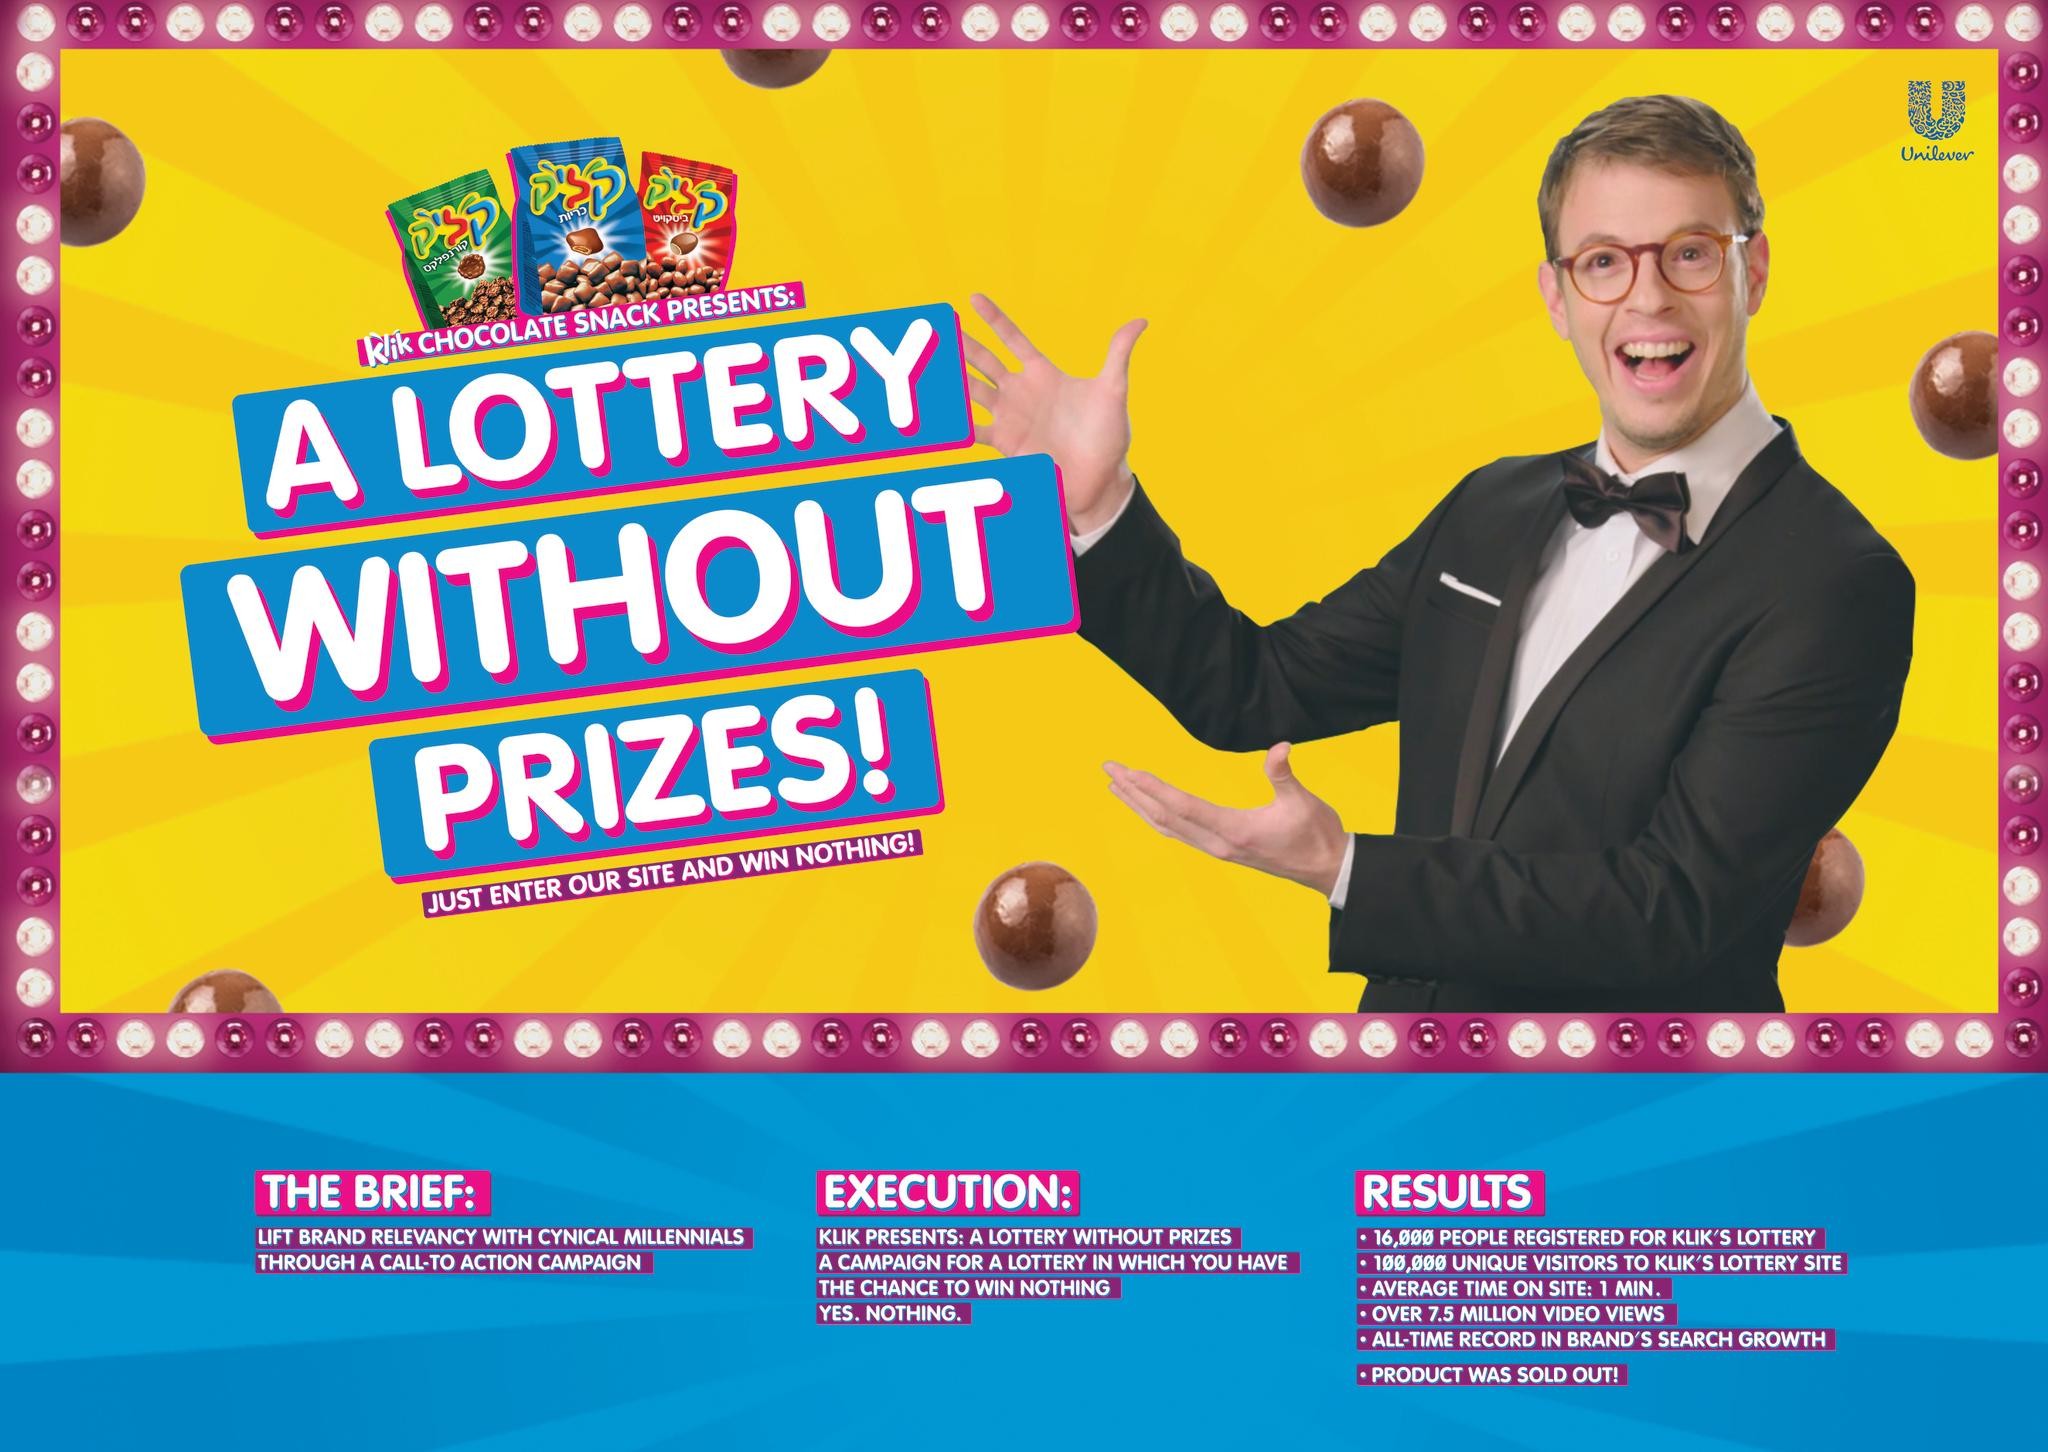 KLIK's lottery without prizes